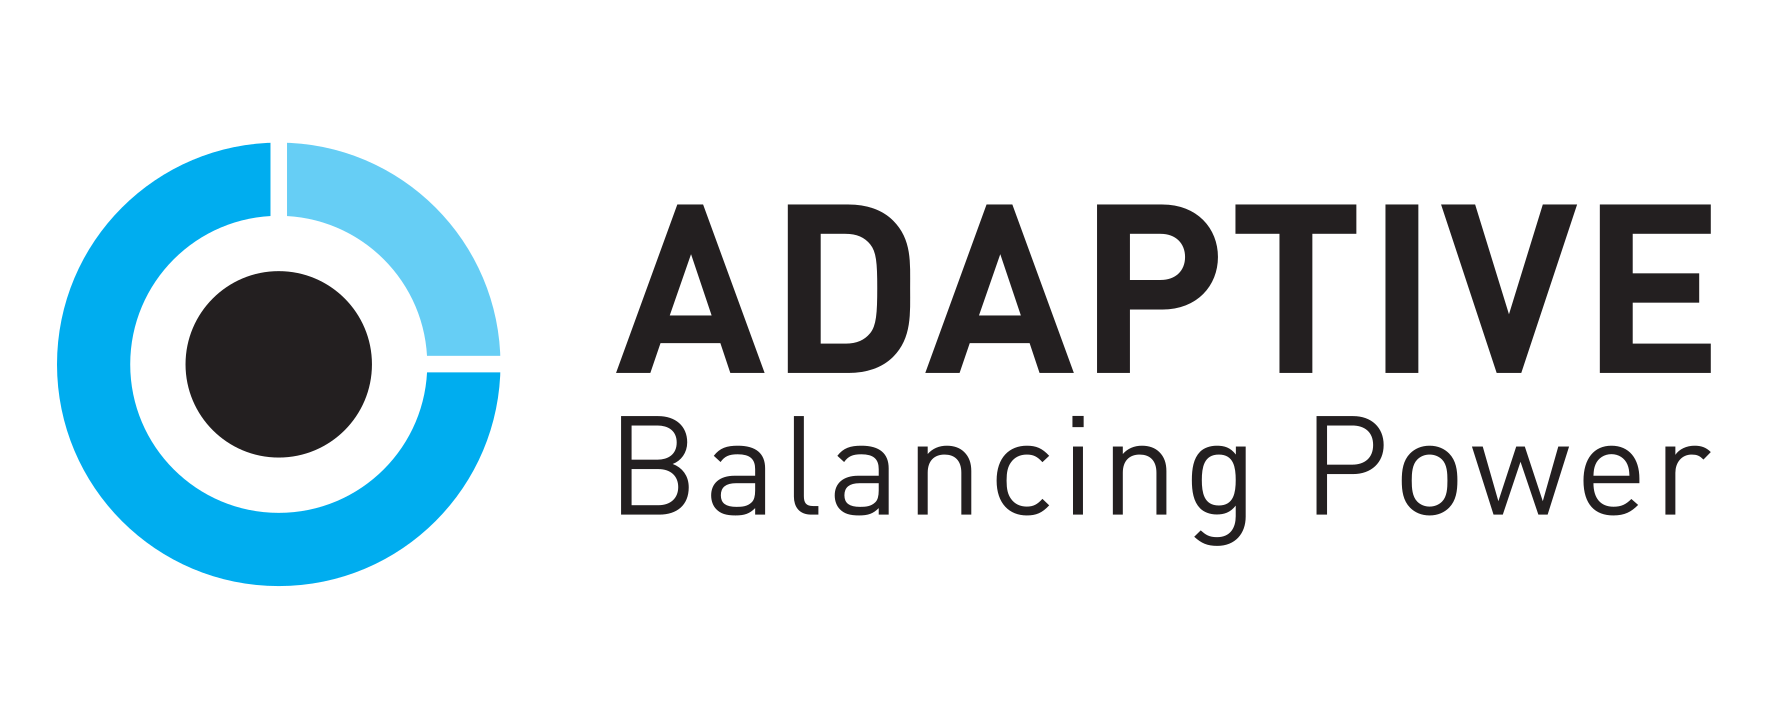 Adaptive Balancing Power